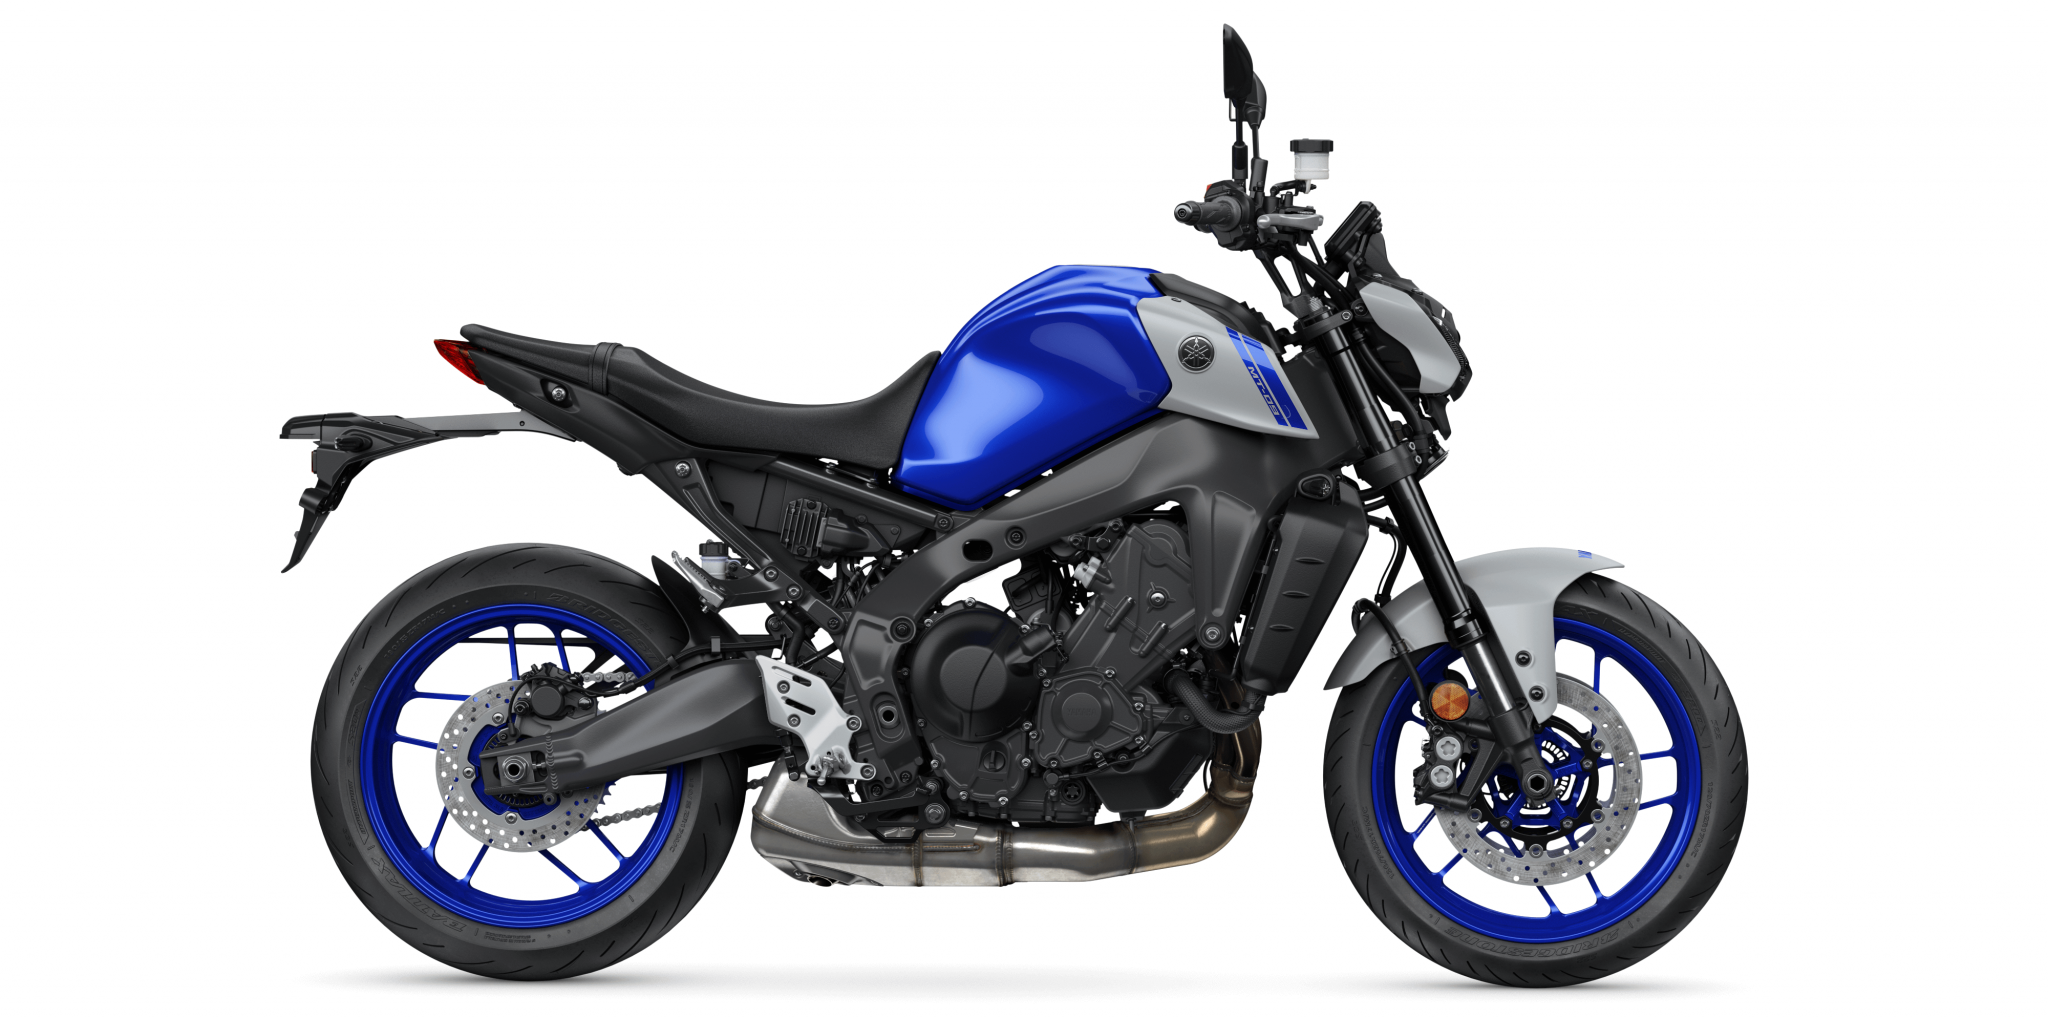 Yamaha MT 09 Ist Das Motorrad Mit Den Vielen Superlativen